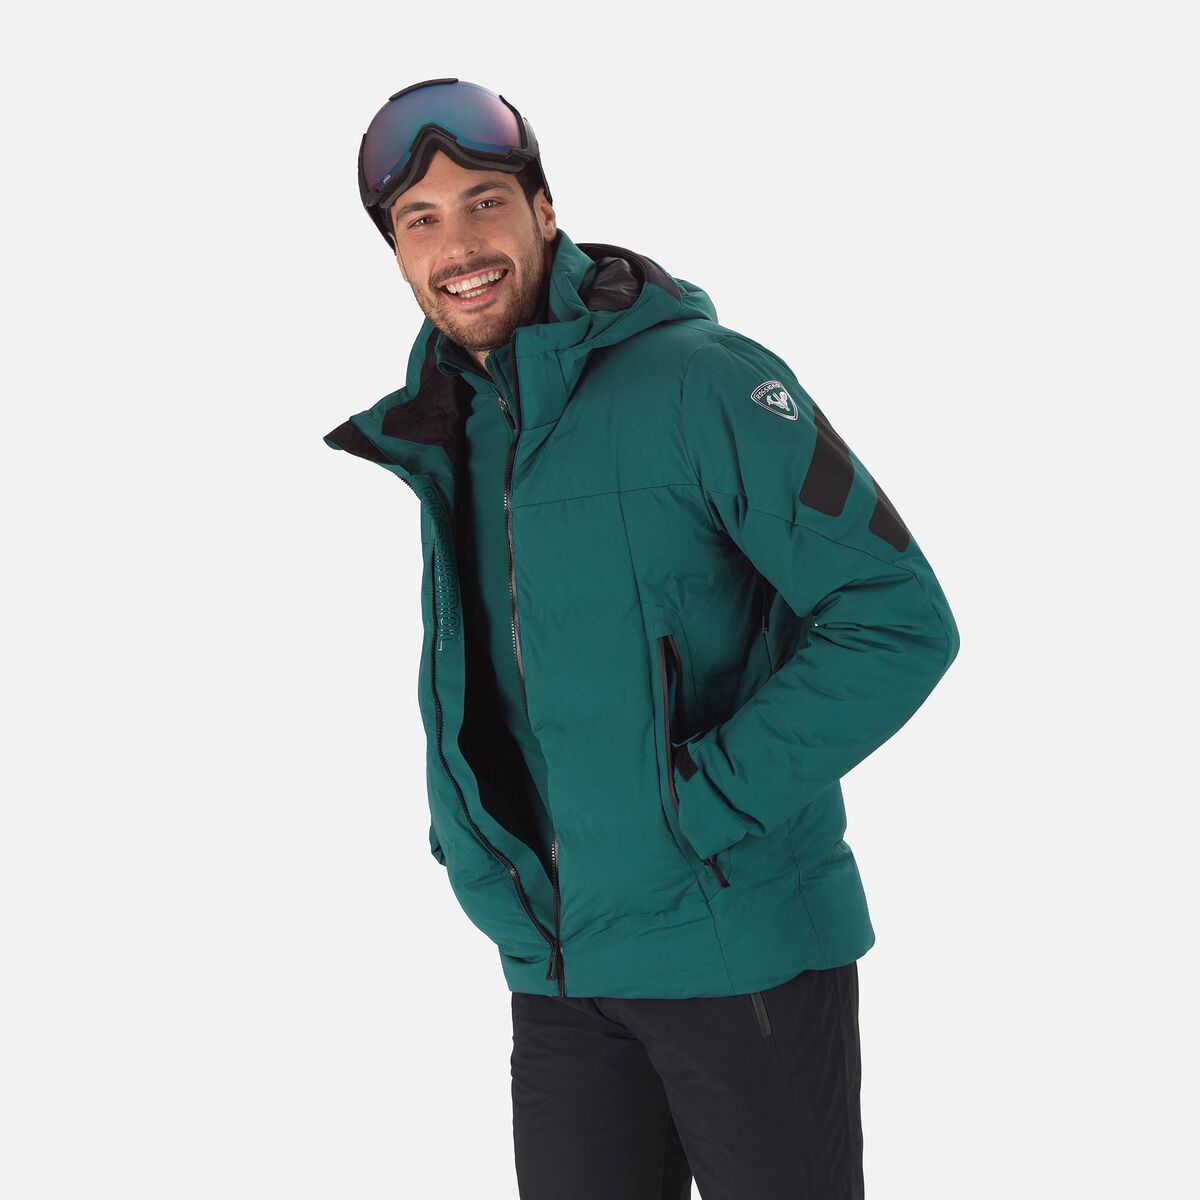 Men's Depart Ski Jacket